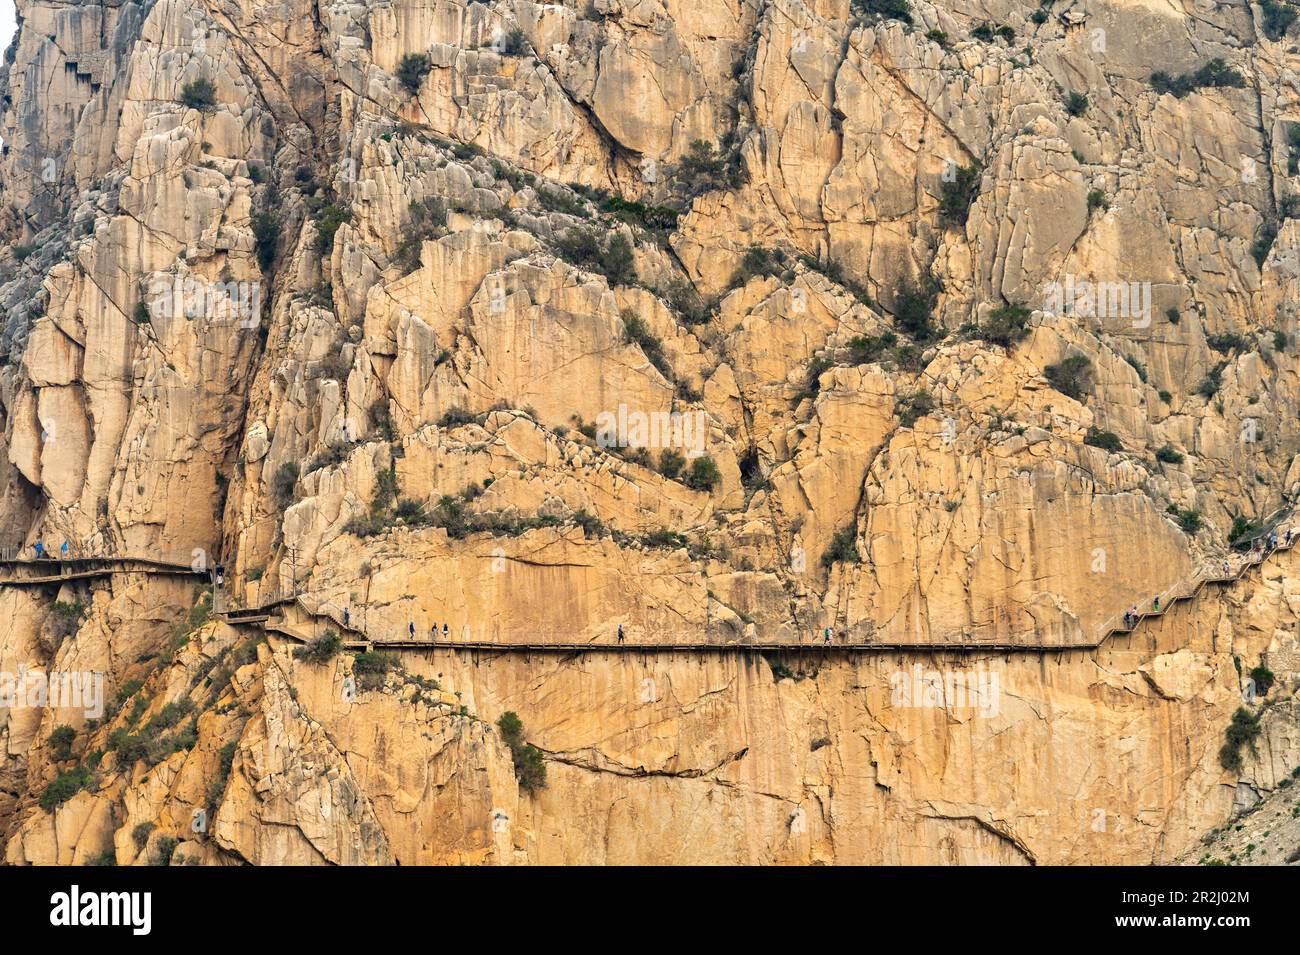 Via ferrata Caminito del Rey hoch in den Felsen von El Chorro, Andalusien, Spanien Stockfoto